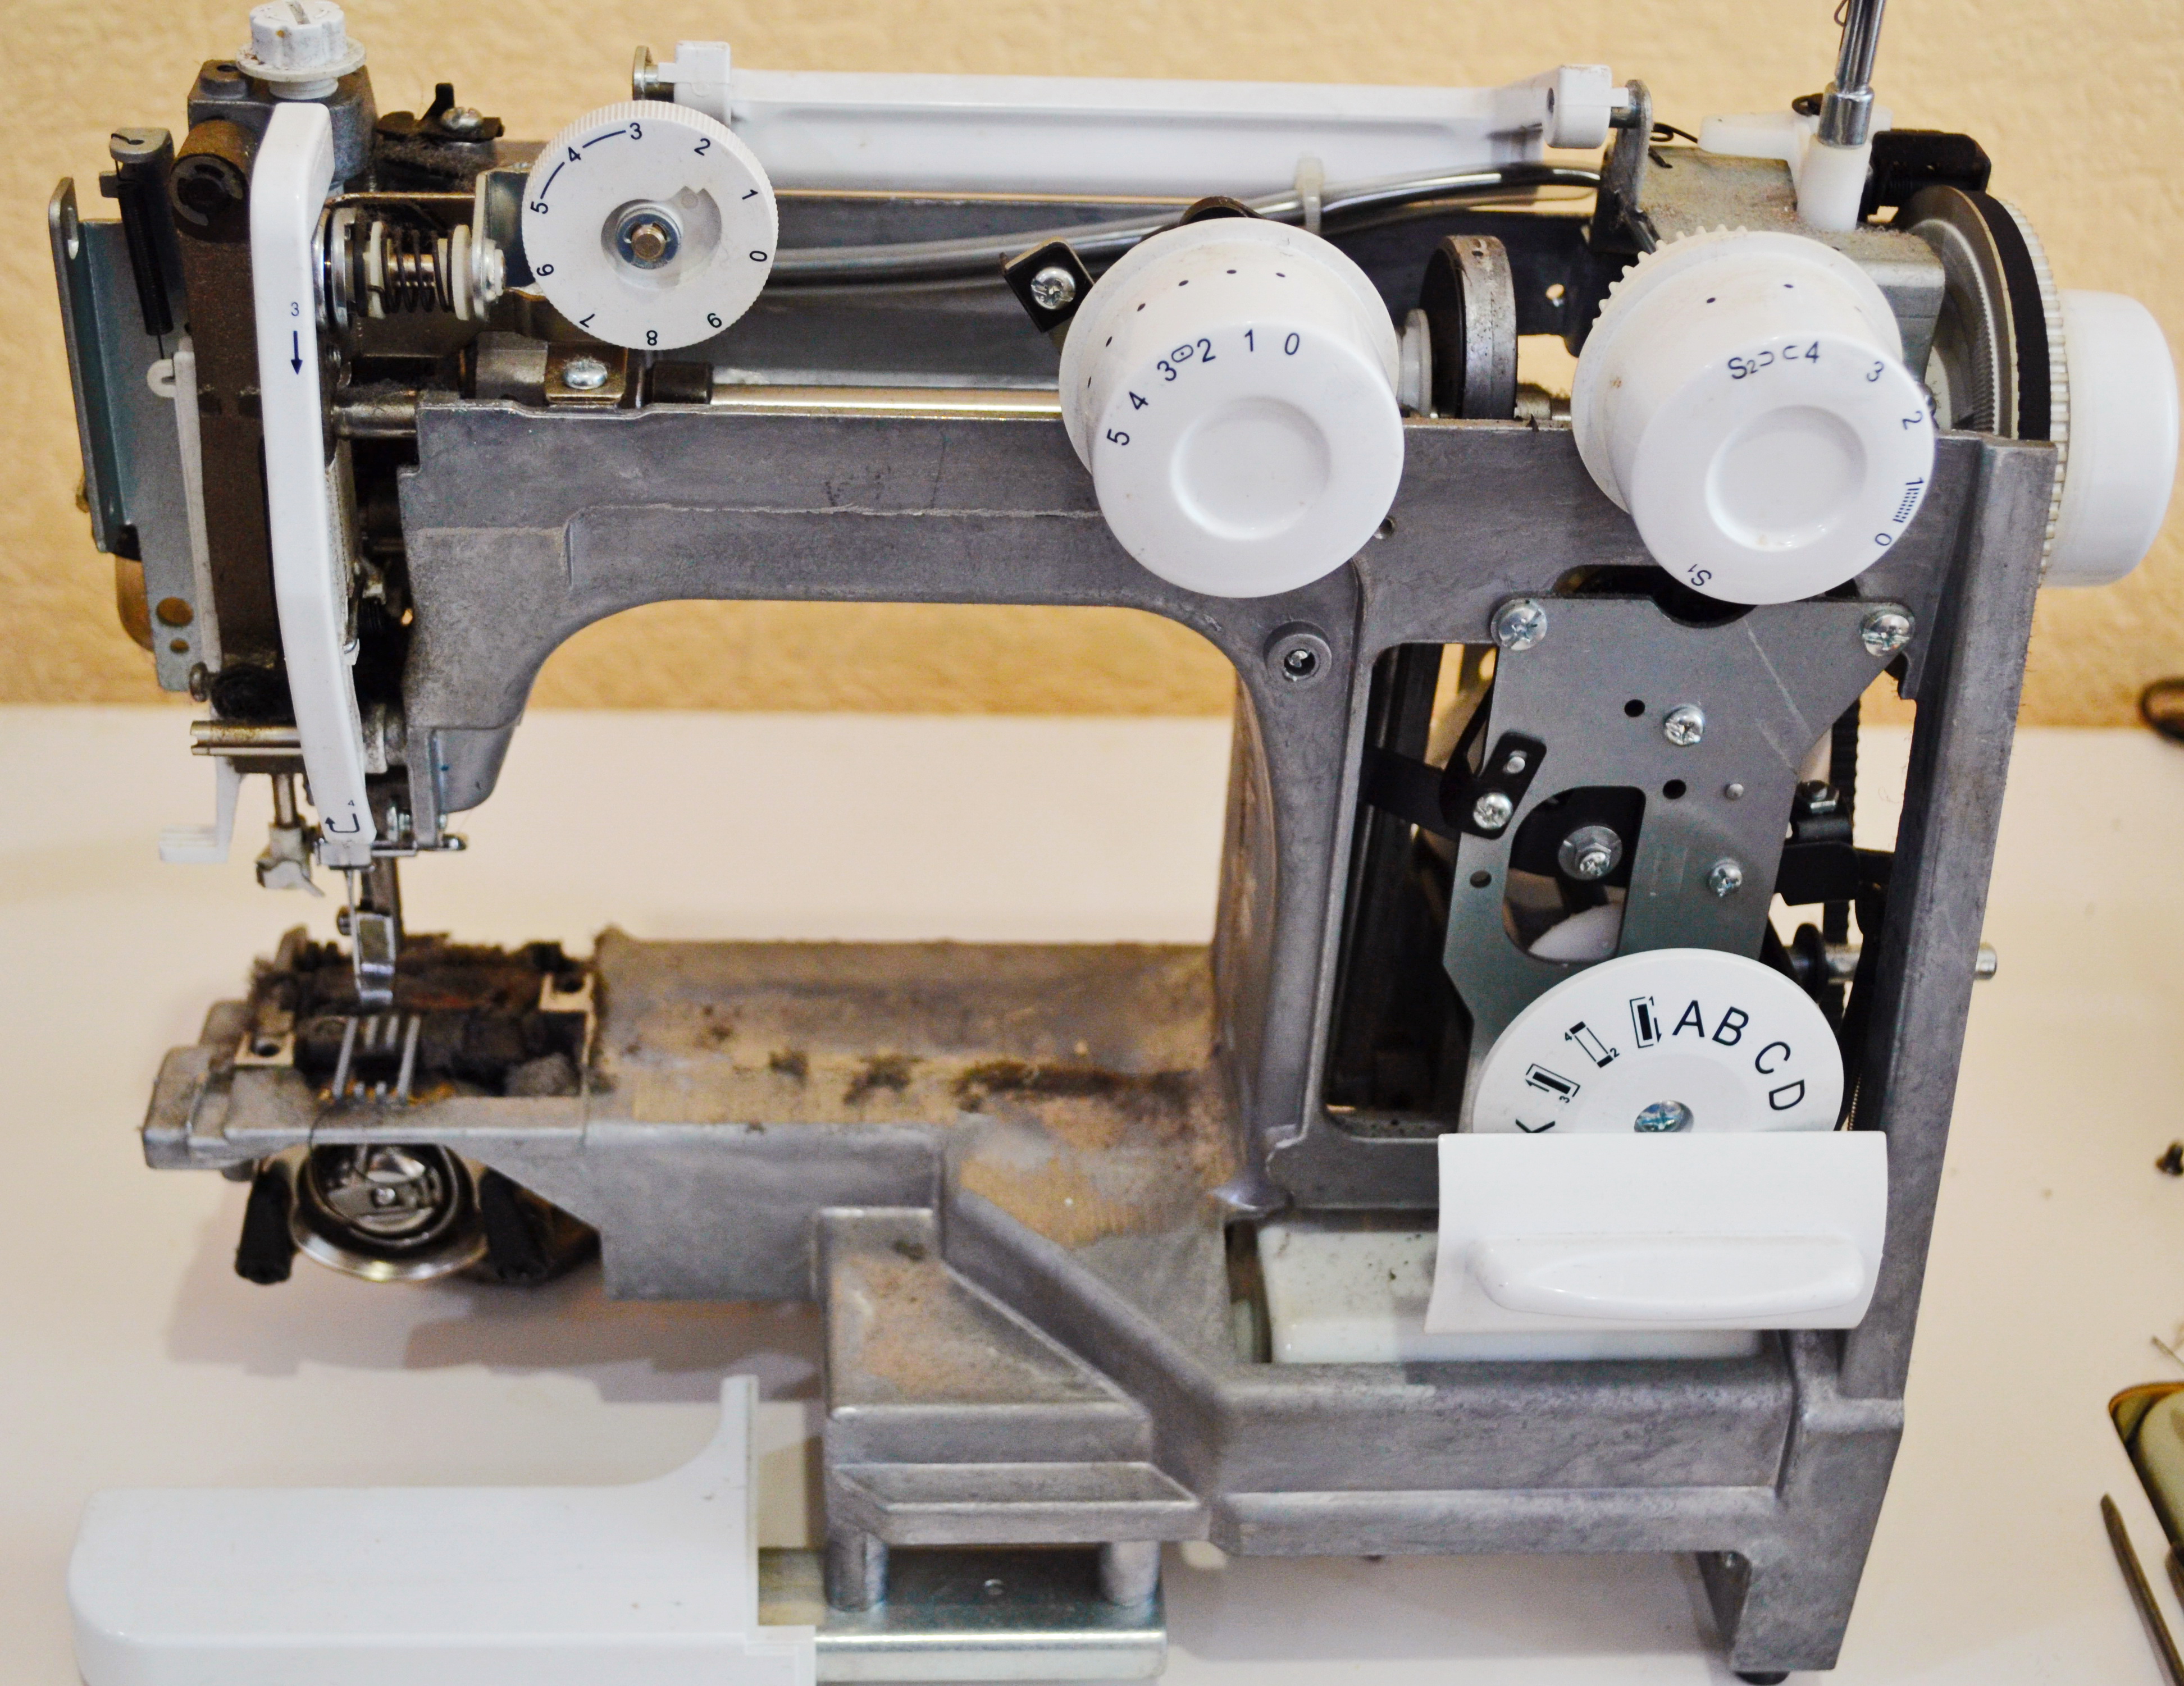 ремонт швейных машин